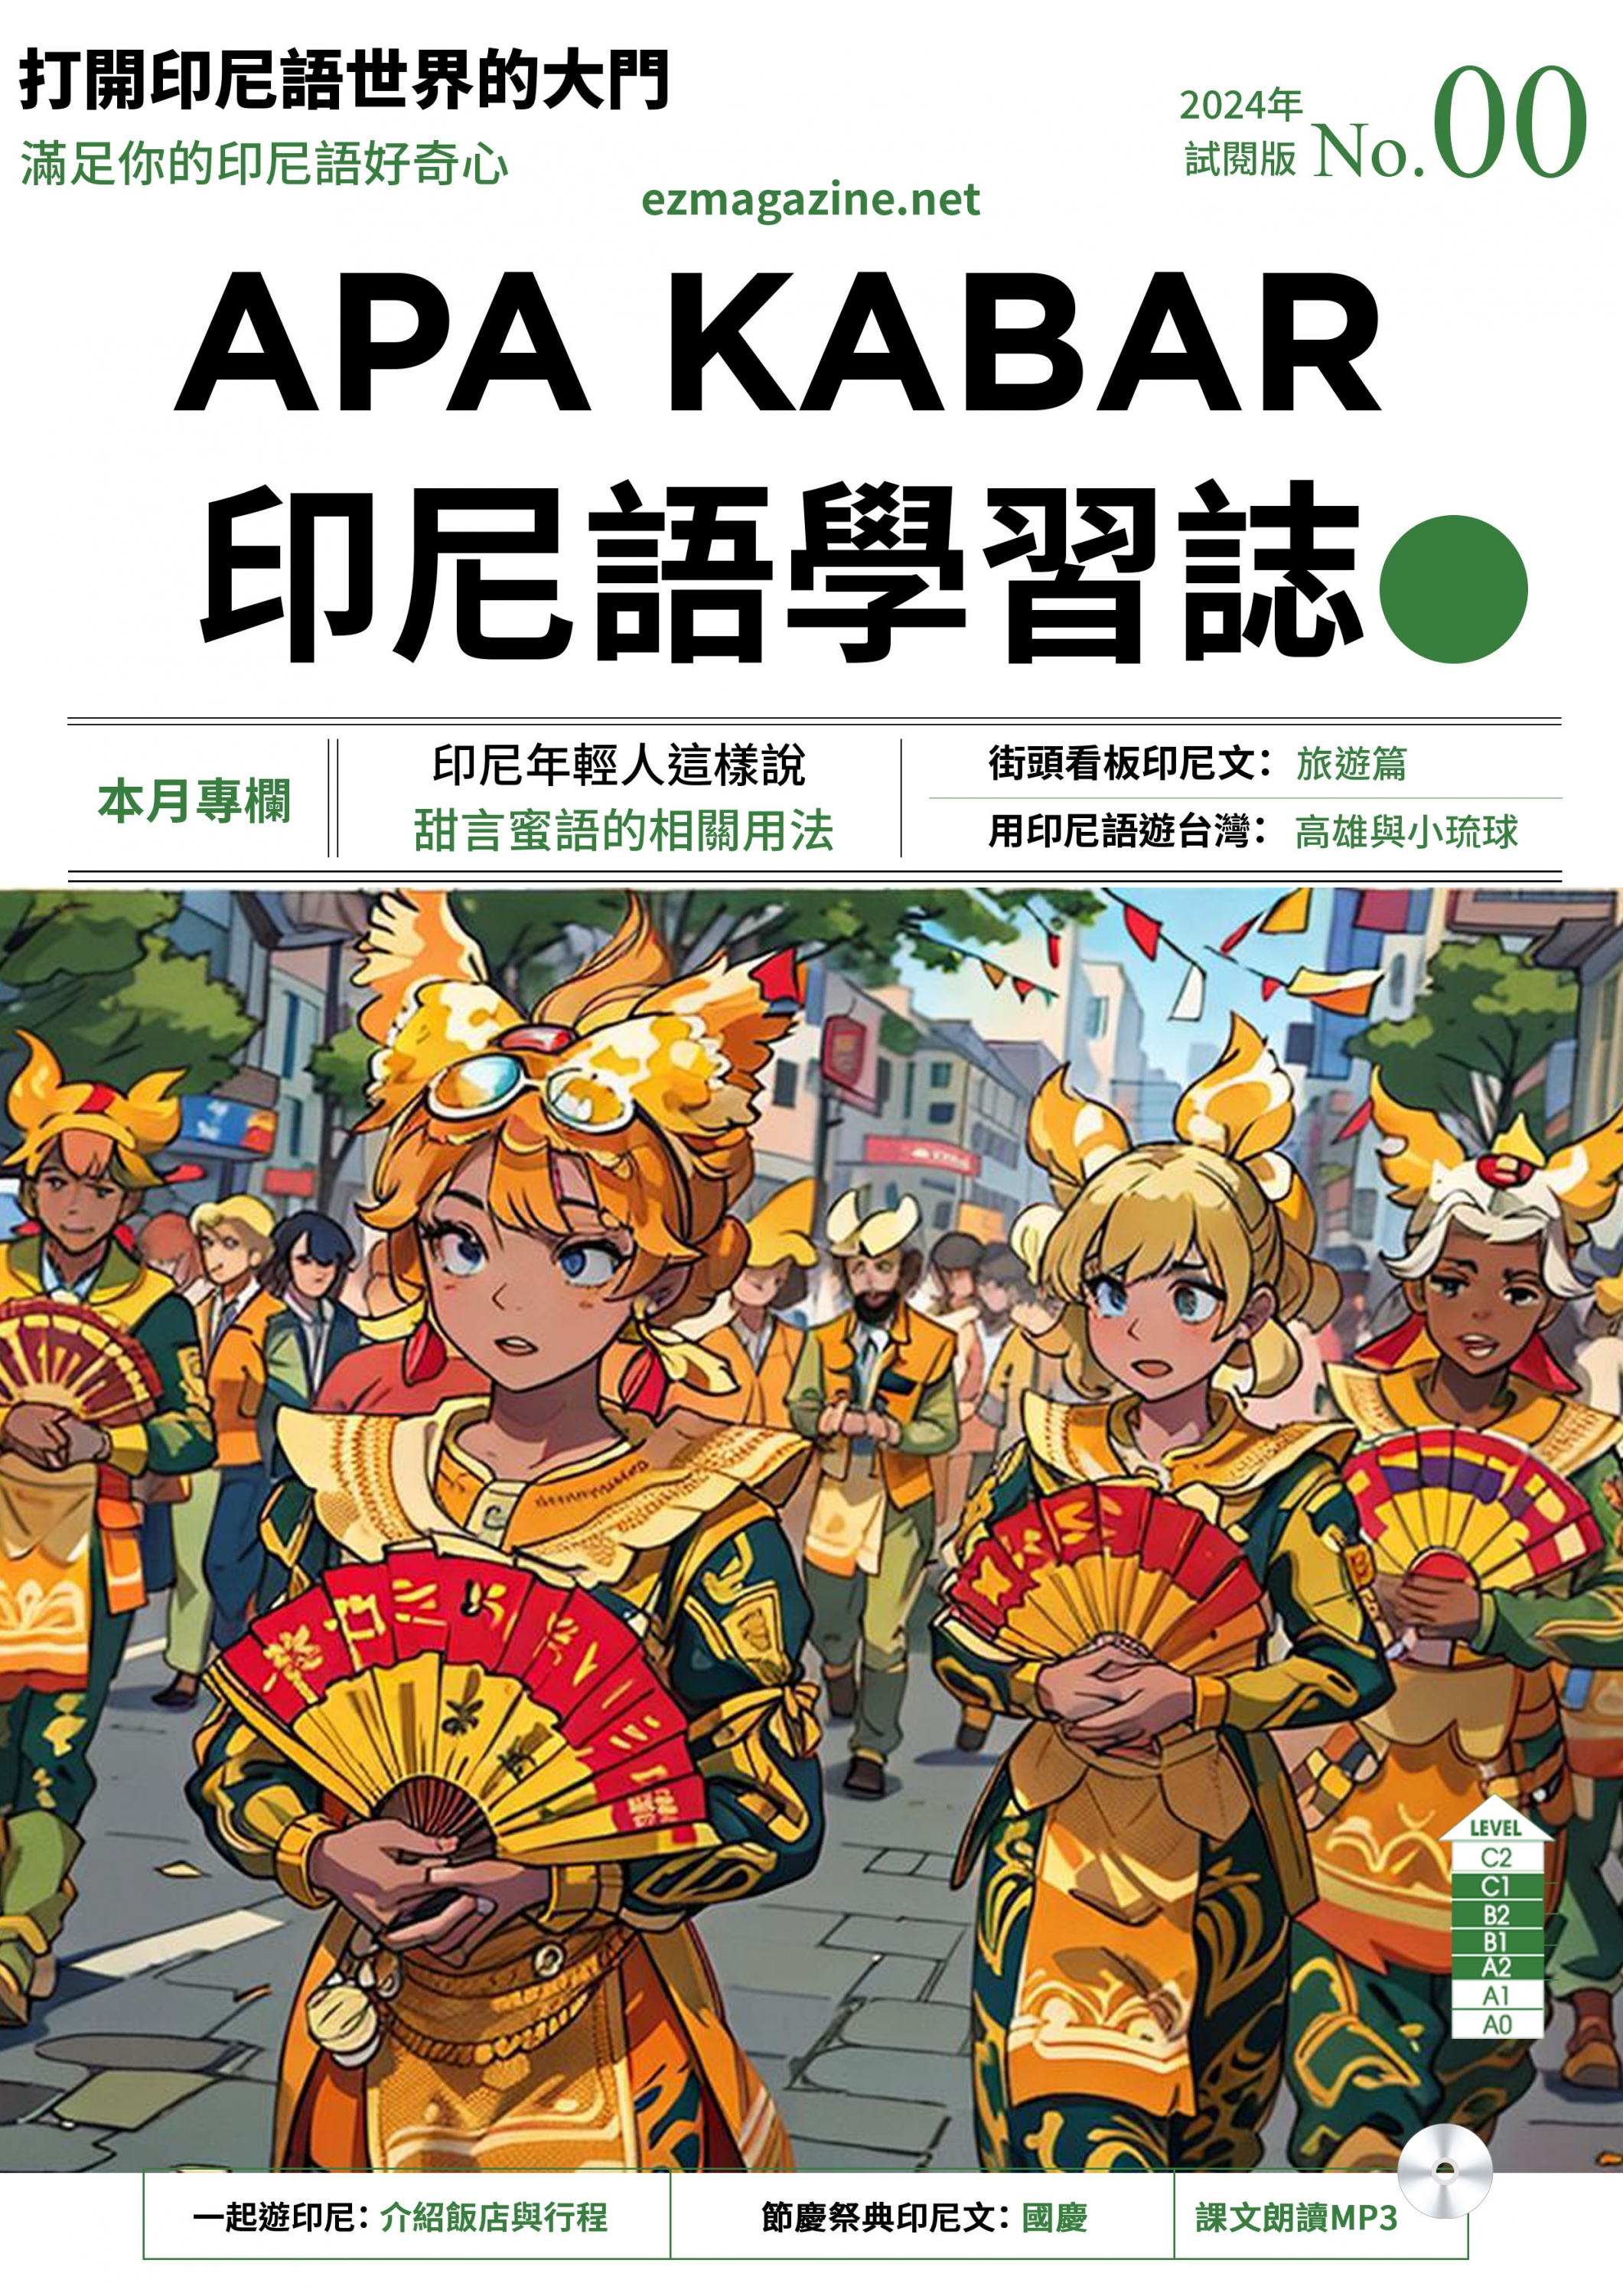 APA KABAR印尼語學習誌-全新插圖封面體驗版